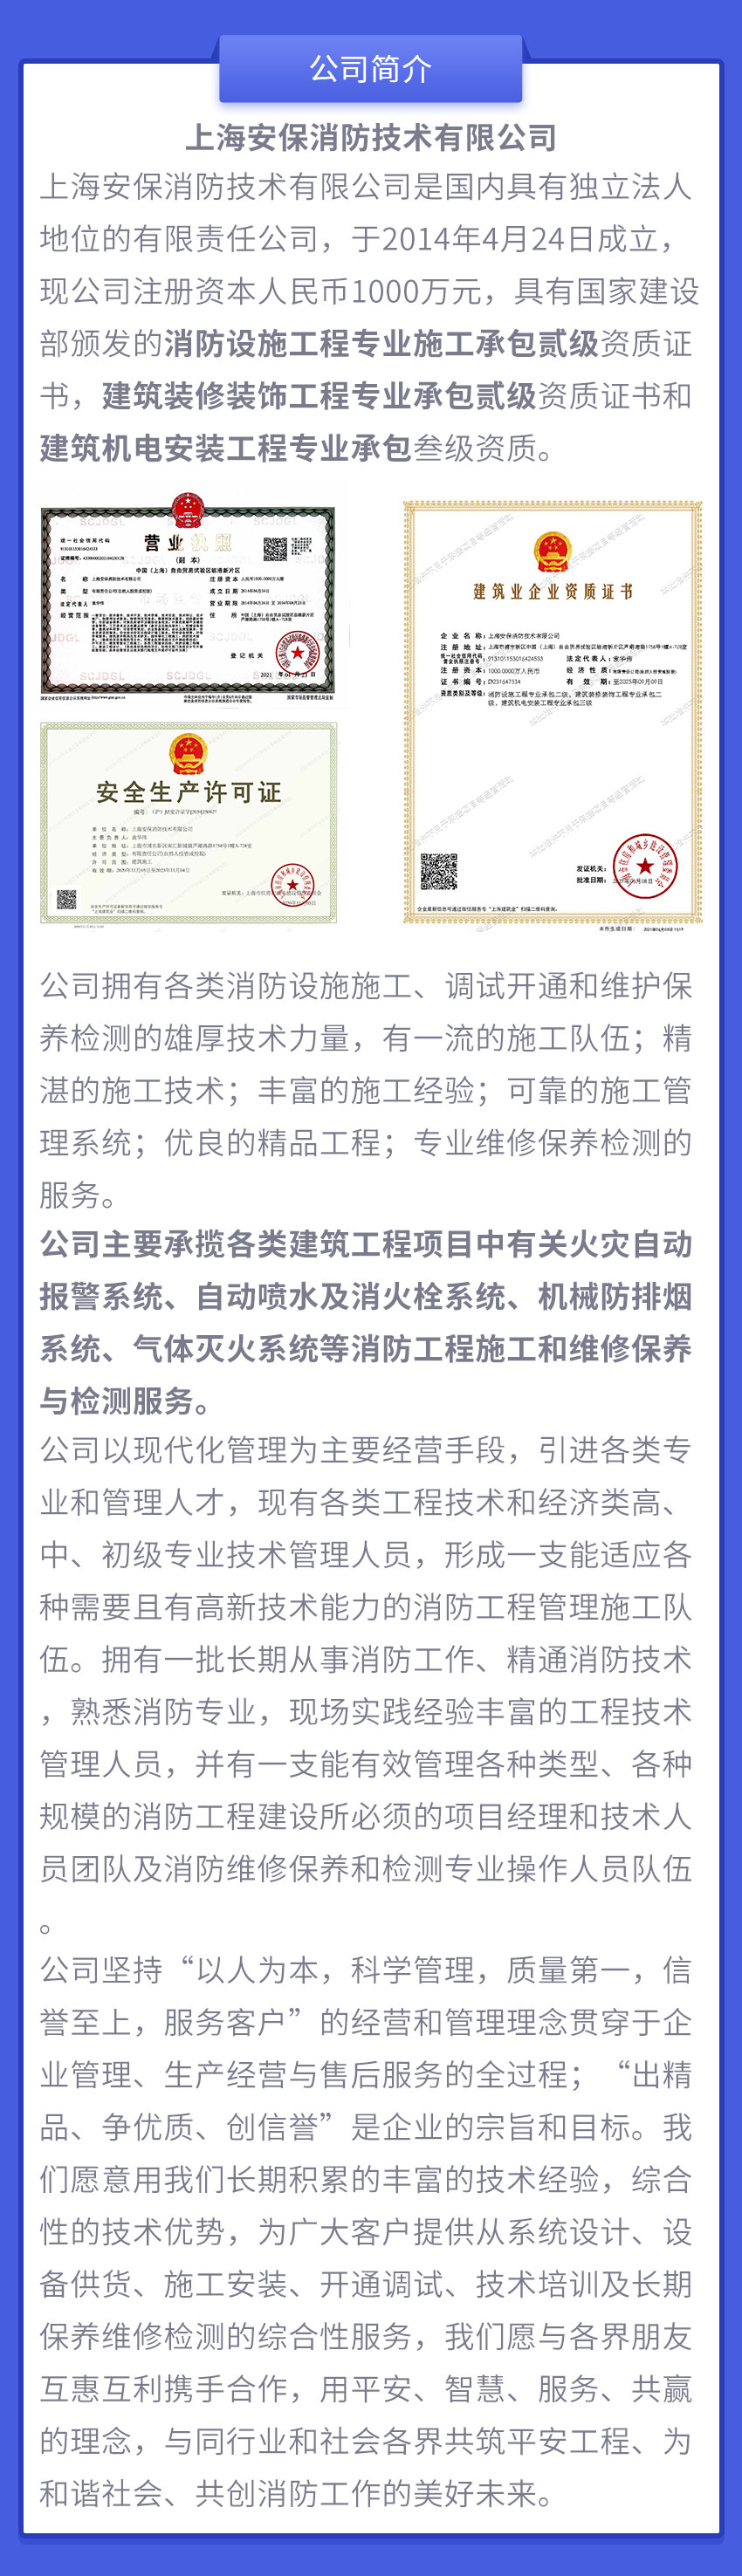 上海安保消防技术有限公司